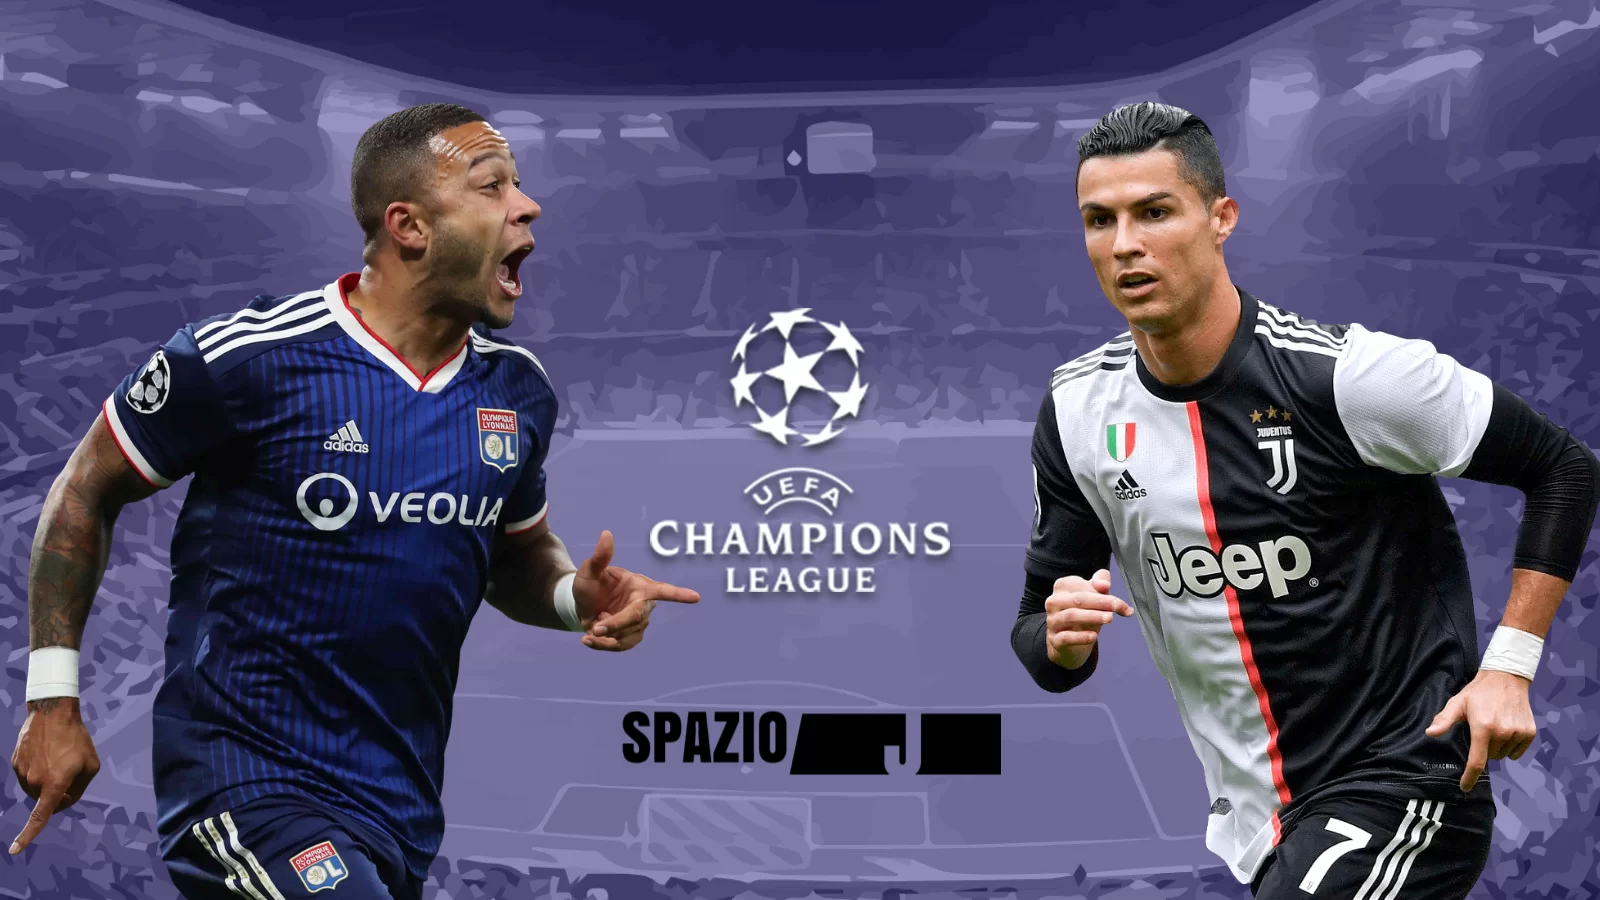 Champions League, Juventus-Lione di venerdì 7 agosto sarà trasmessa in chiaro su Canale 5